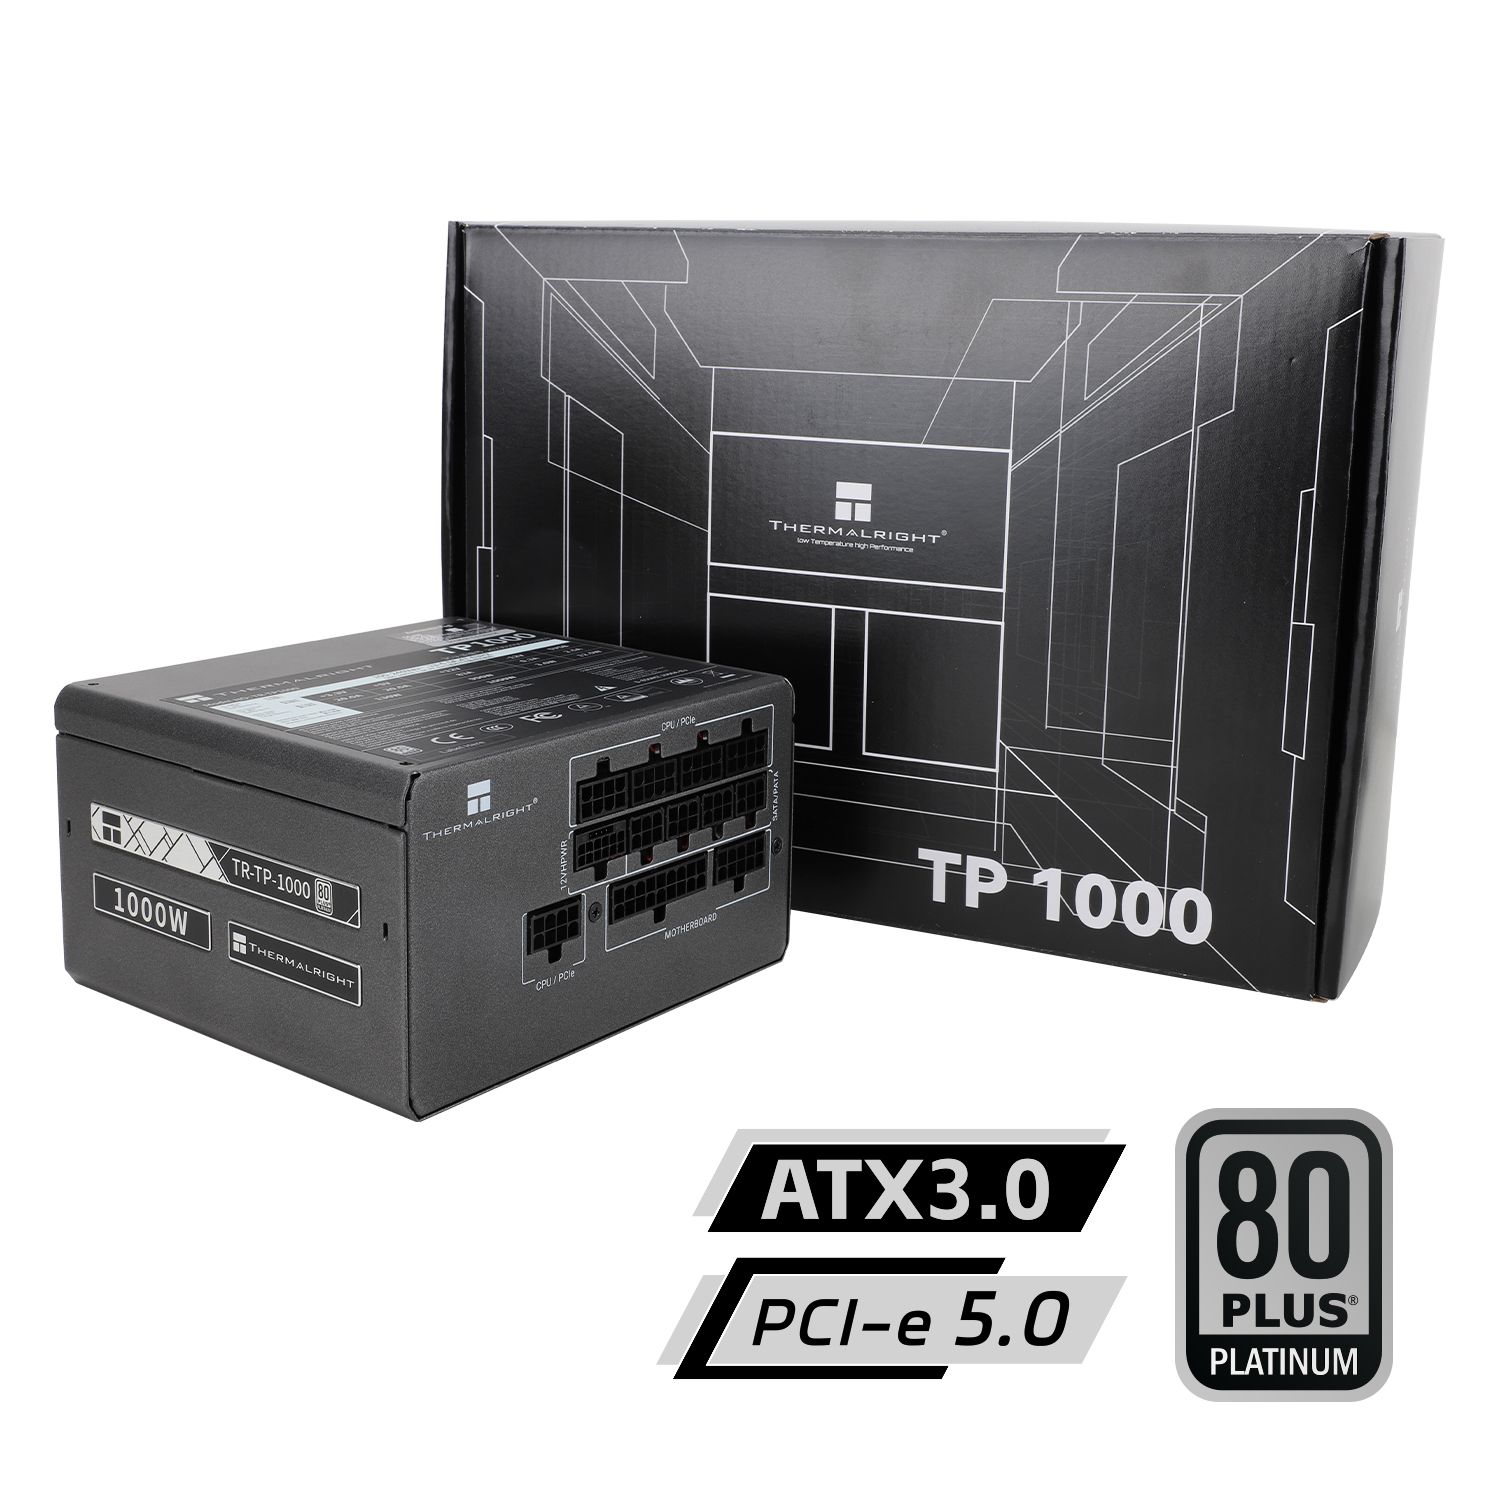 Nguồn máy tính Thermalright TP 1000 nhập khẩu - Đen | 1000W, 80 Plus Platinum, PCIe 5.0